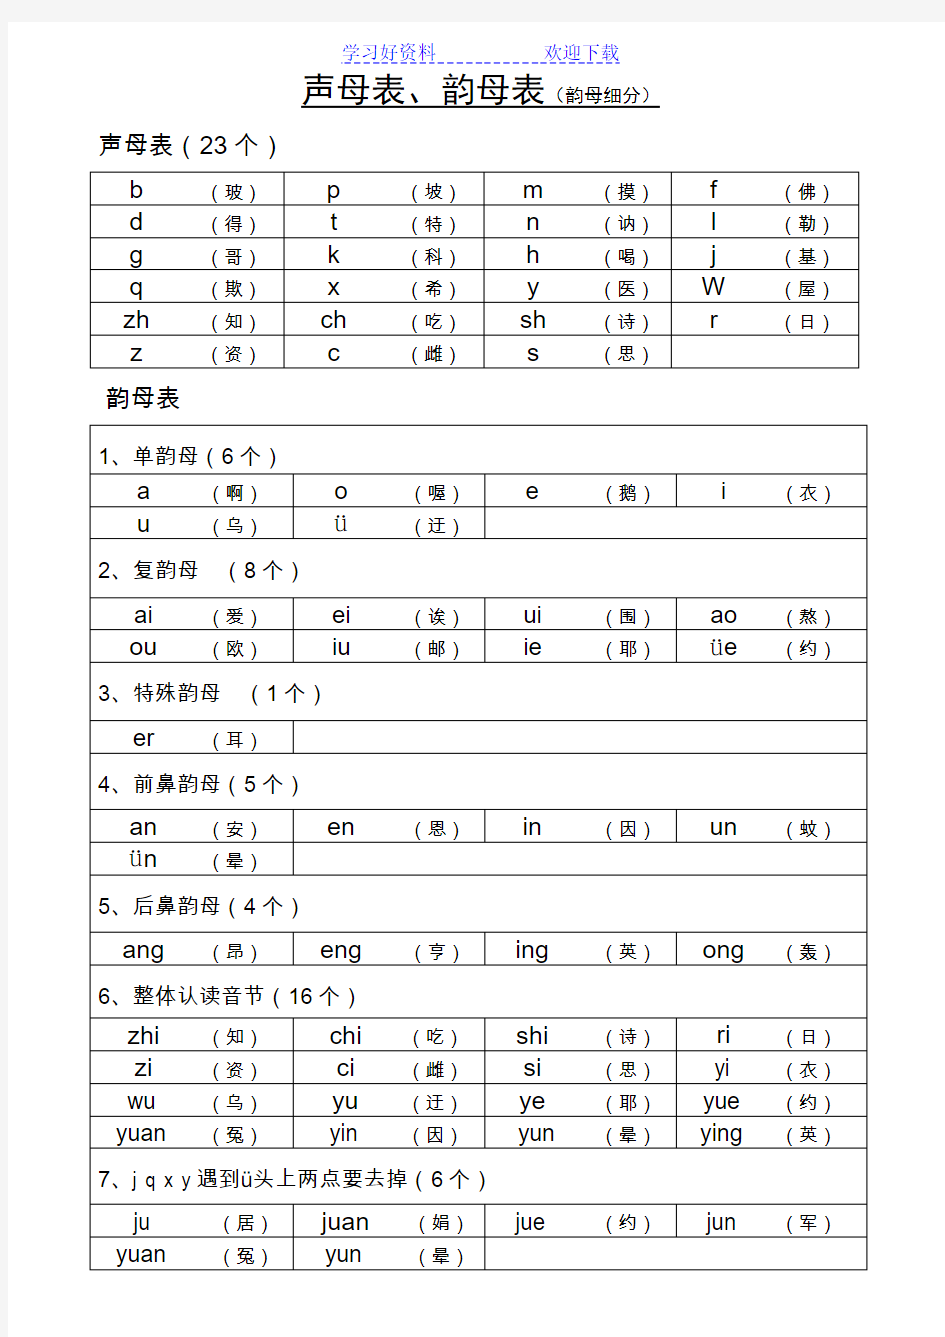 声母表和韵母表汉语拼音音节表(排版清晰内容准确,便于孩子或成人自学)